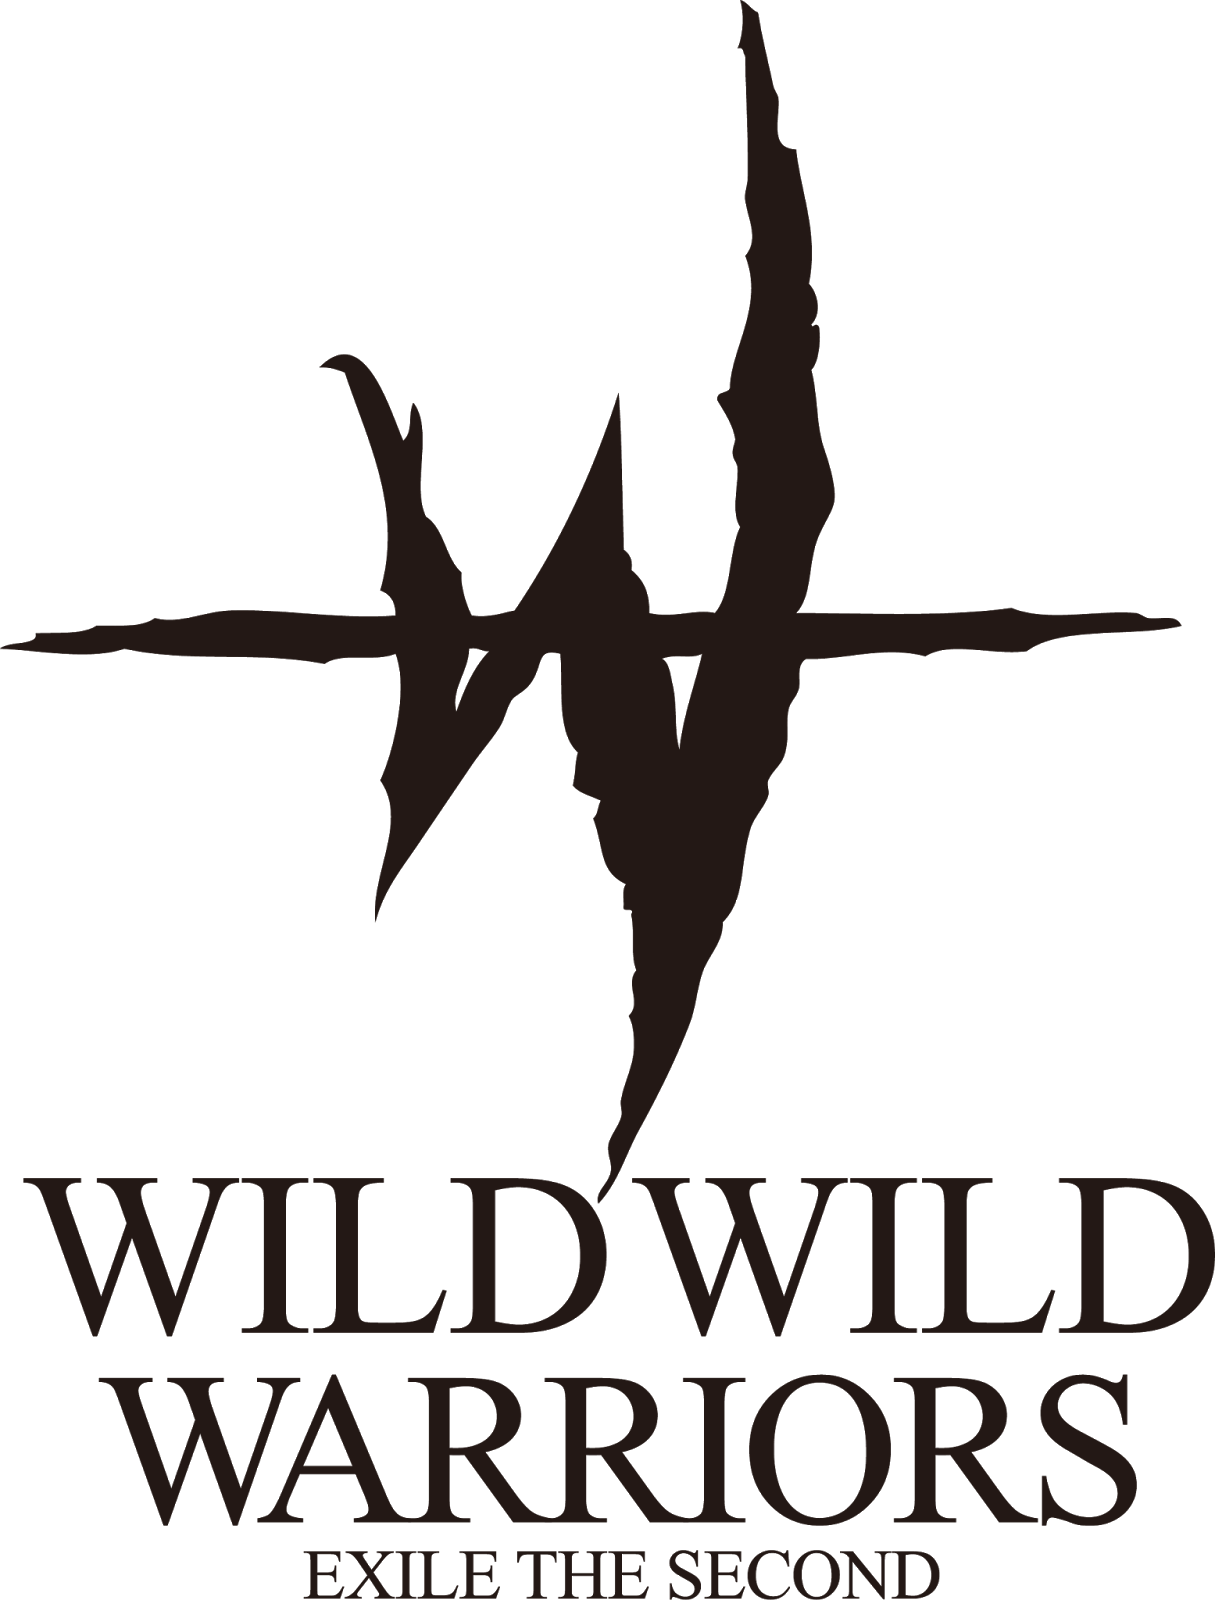 Logodol 全てが高画質 背景透過なアーティストのロゴをお届けするブログ Exilr The Second 16 17 ツアーロゴ Wildwild Warriors の高画質透過ロゴ